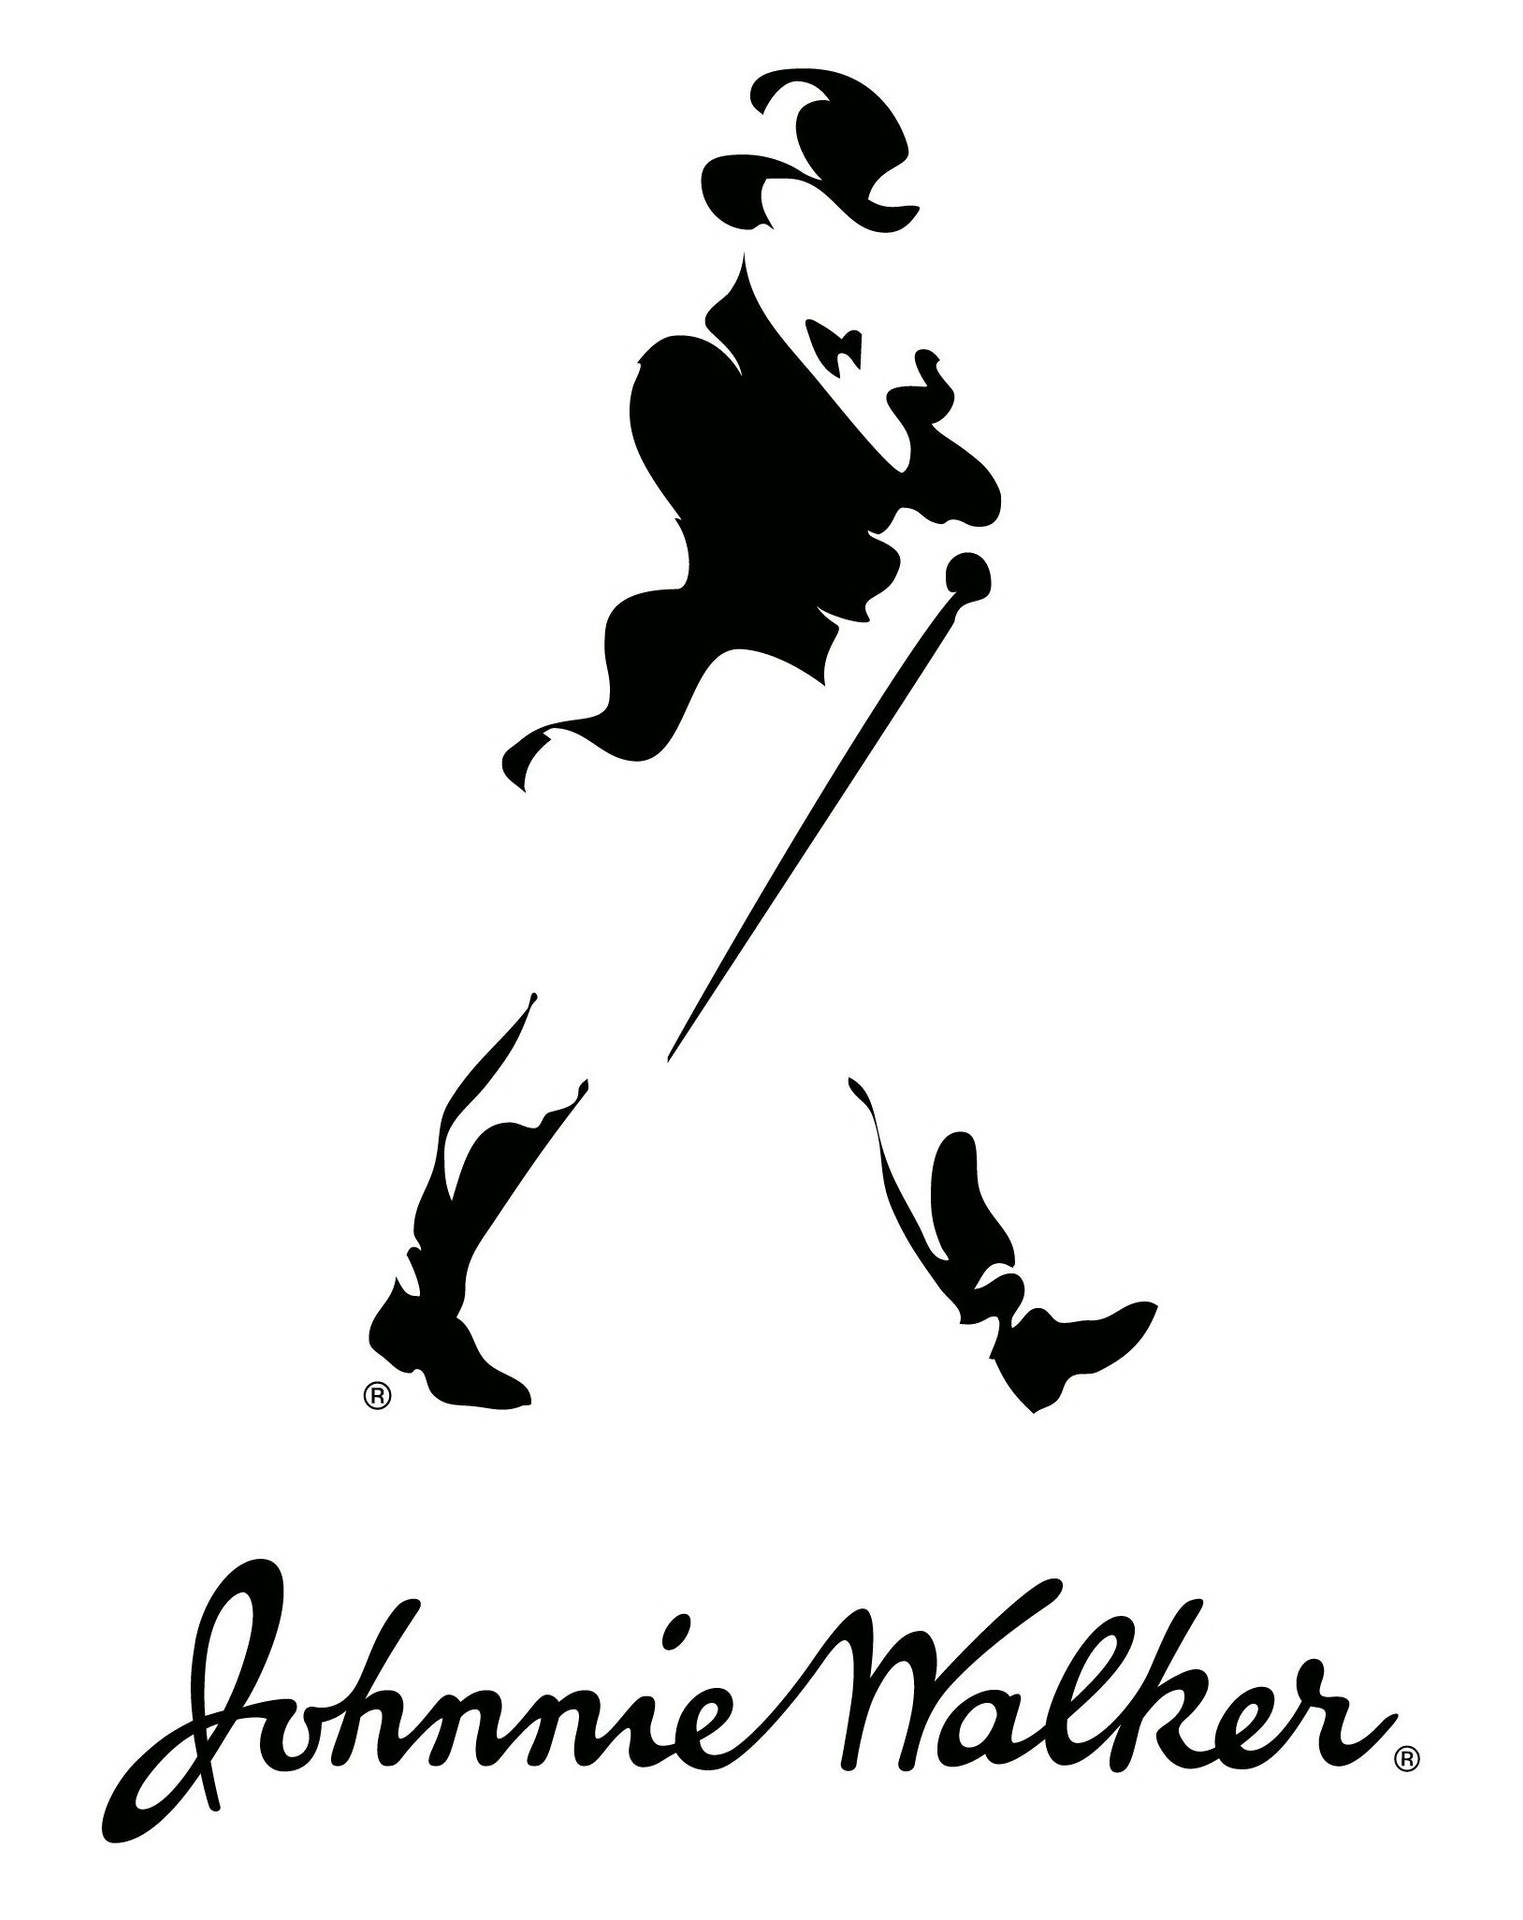 Johnnie Walker Whisky Introduces Jane Walker Female Logo | Time